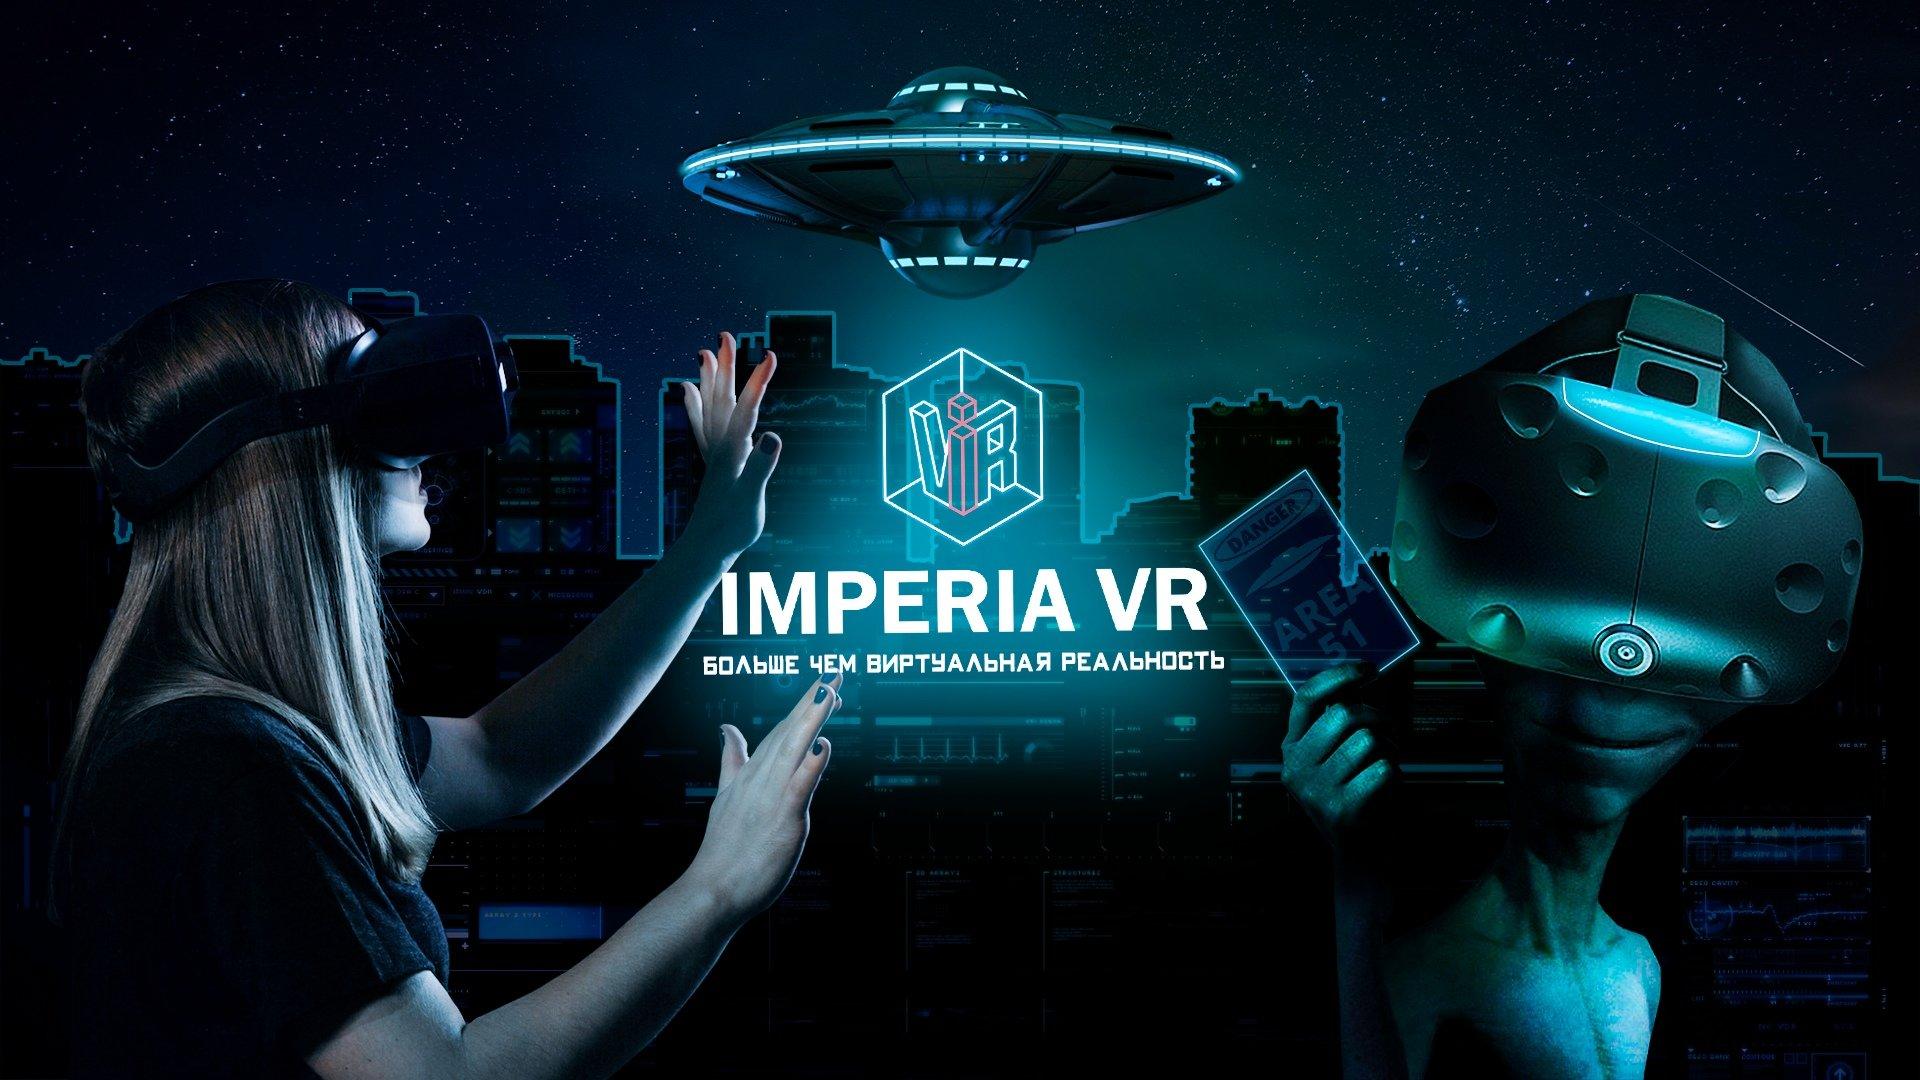 Включи виртуальная есть. Куб виртуальной реальности. Клуб виртуальной реальности баннер. Клуб виртуальной реальности логотип. VR виртуальная реальность.